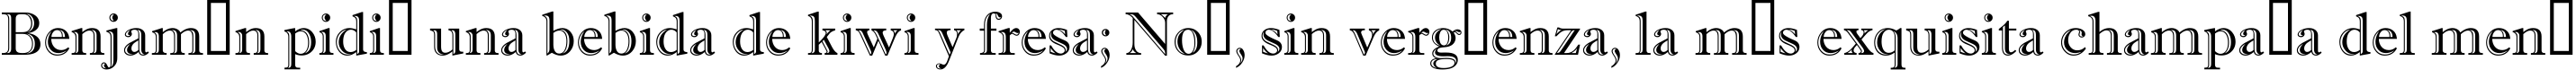 Пример написания шрифтом a_AntiqueGr текста на испанском